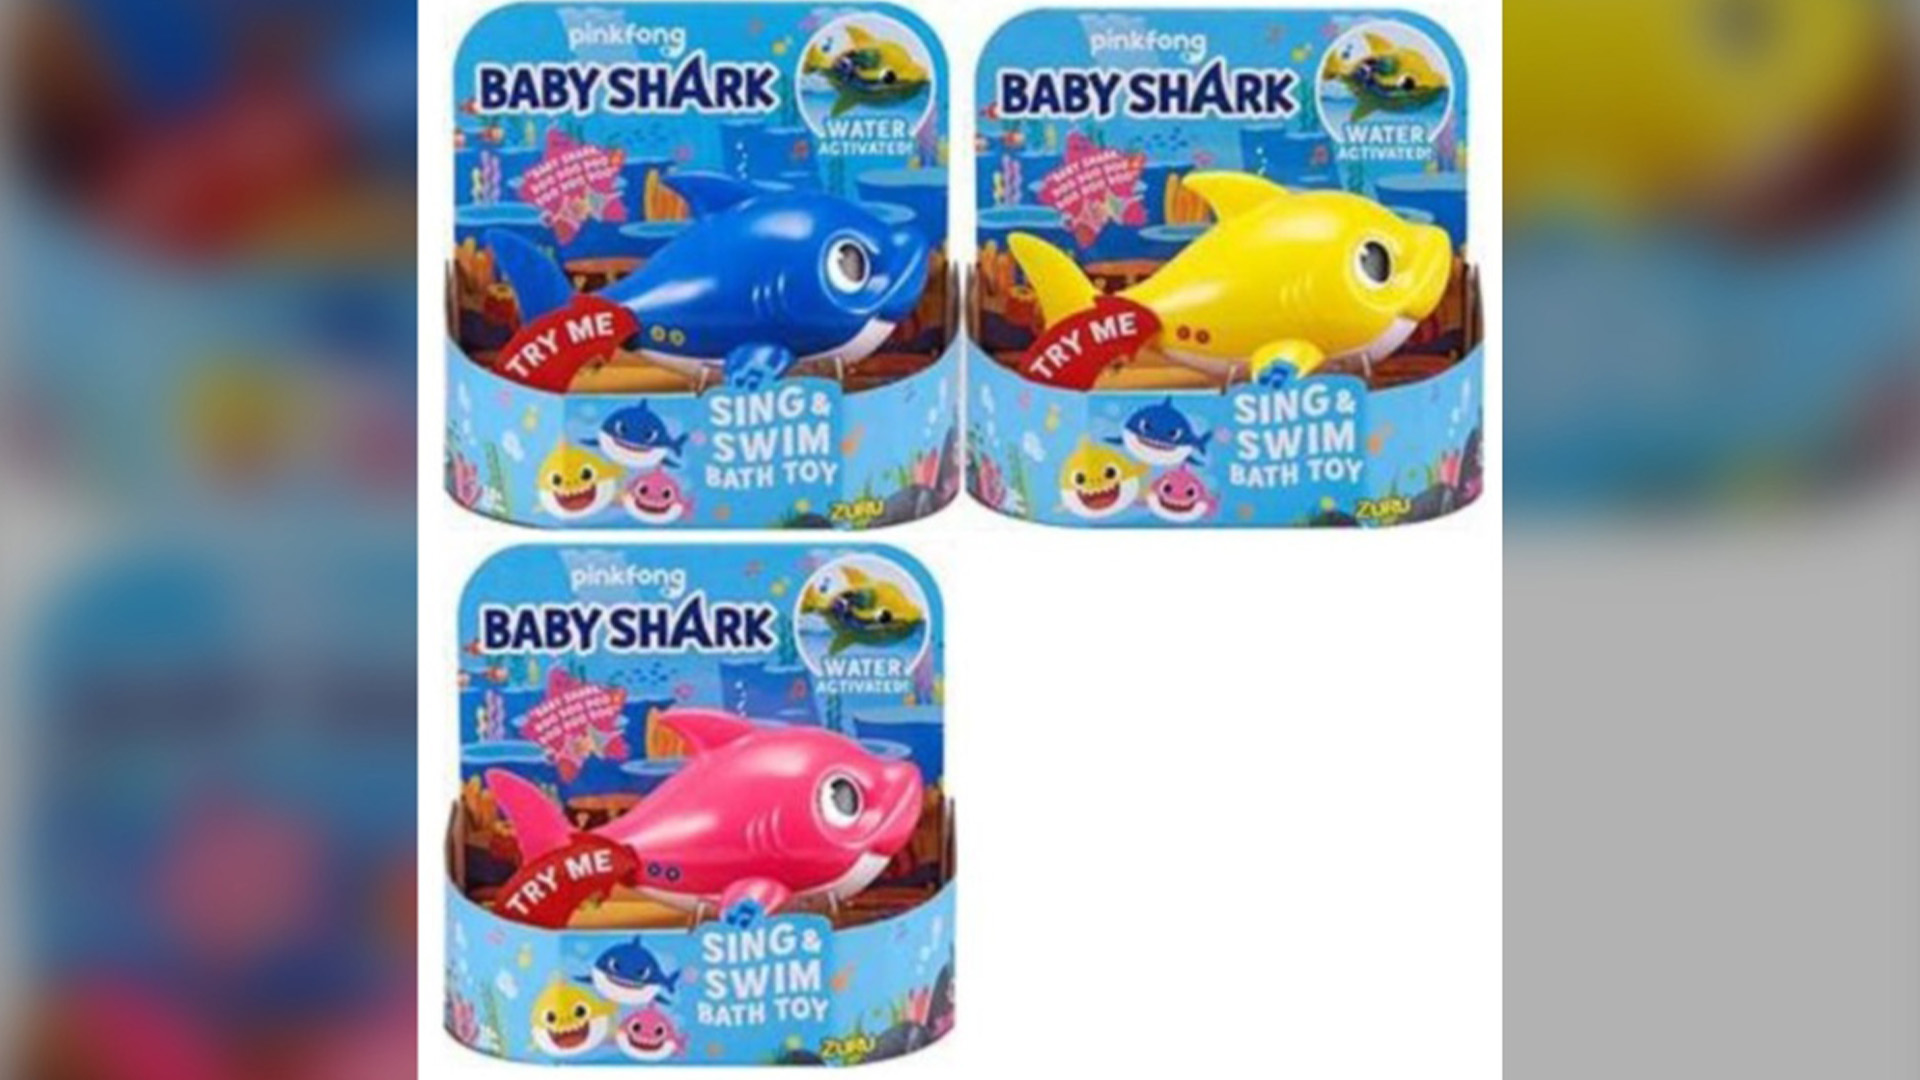 Risque de blessures: un jouet de la marque Baby Shark fait l'objet